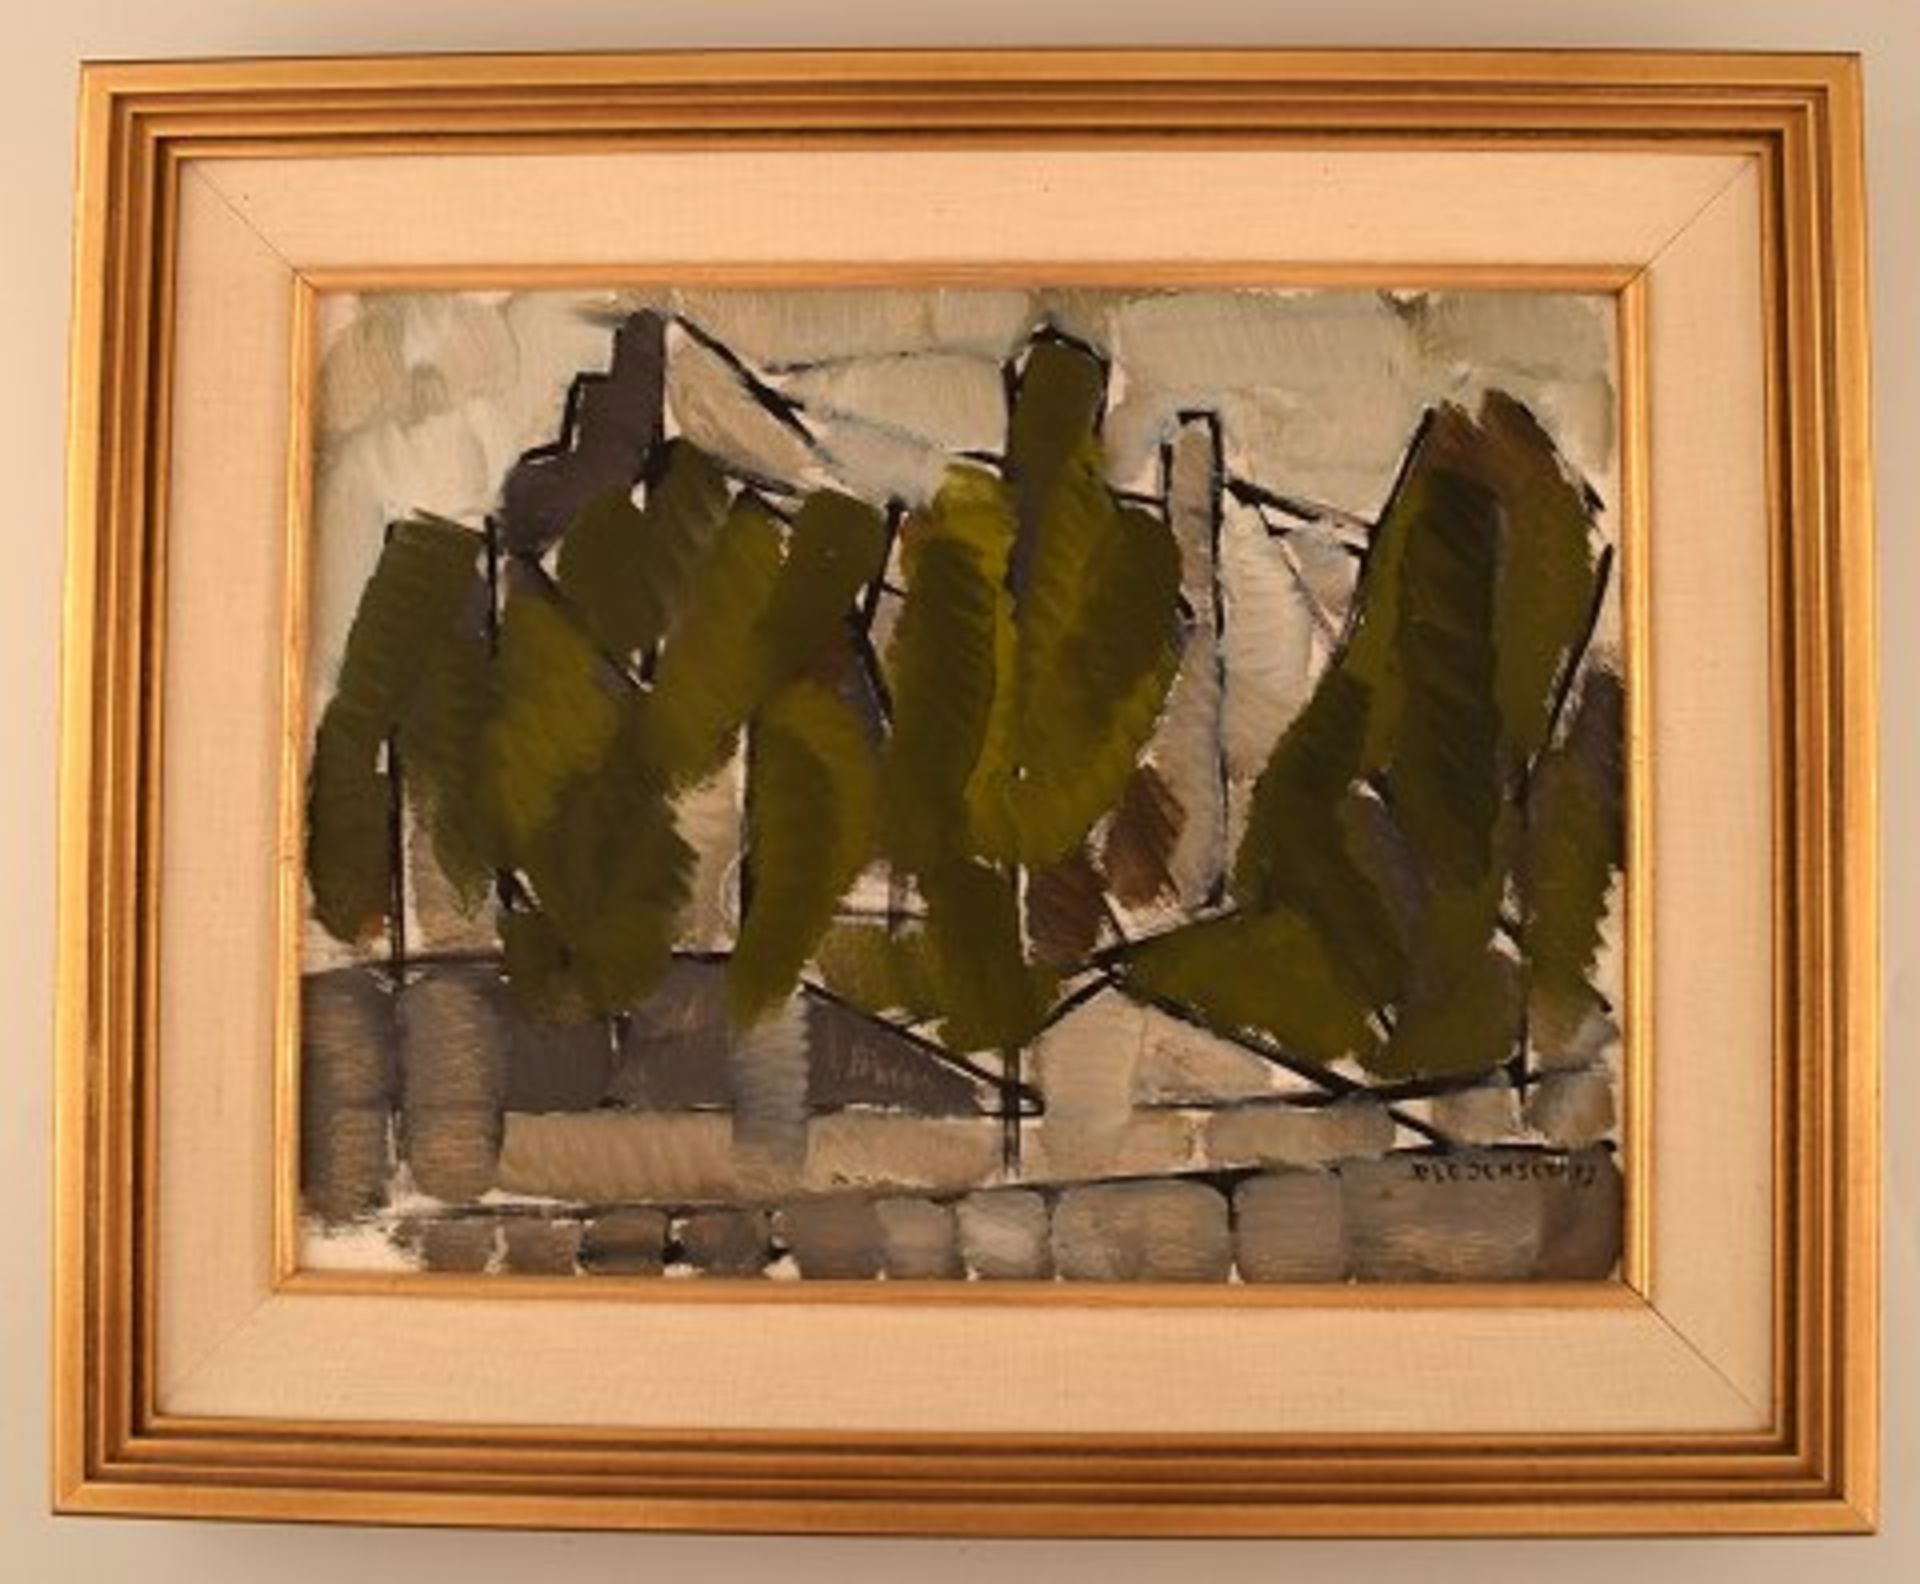 Ole Jensen, dänischer Künstler. Öl auf Leinwand. Modernistische Landschaft mit Bäumen. Datiert 1952.